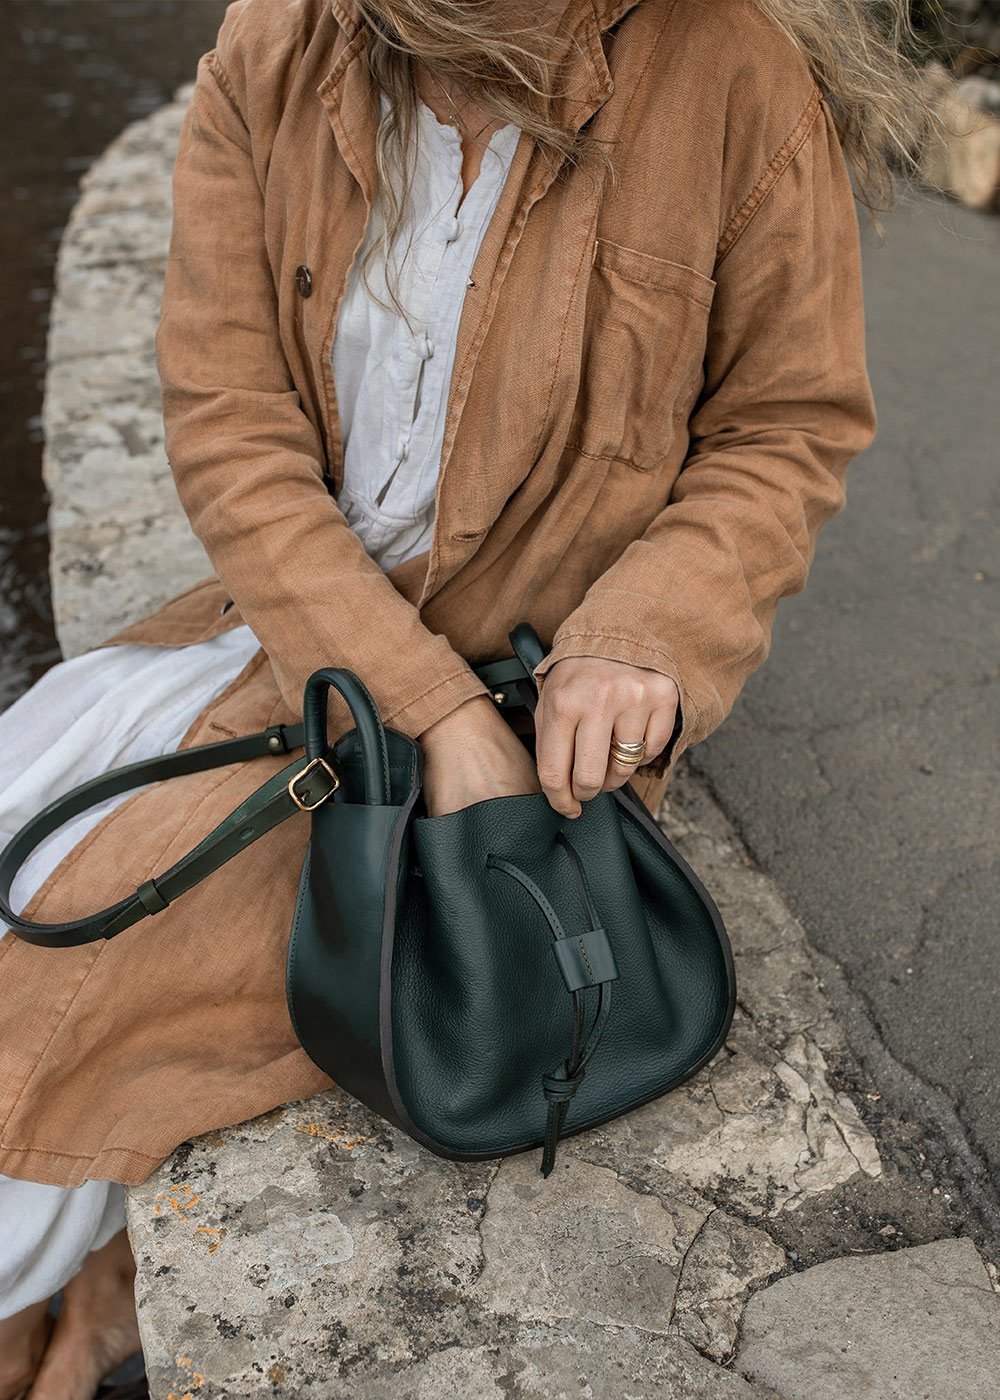 Une femme cherche quelqeu chose dans son sac à main en cuir